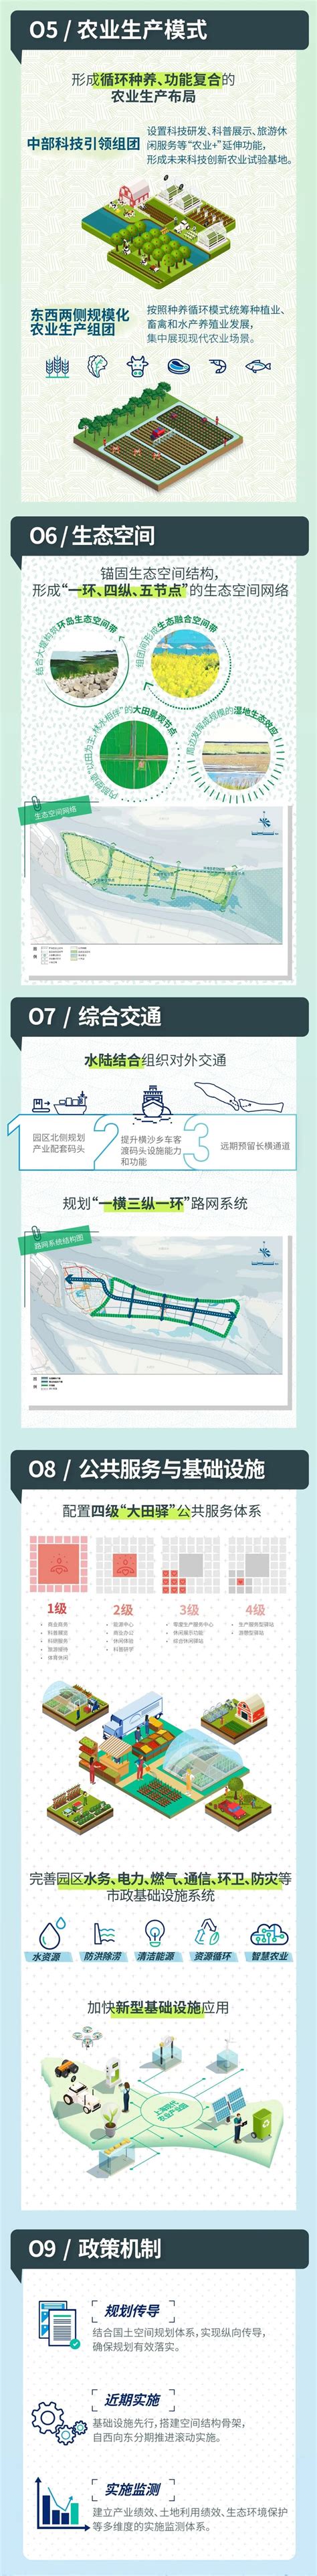 上海市202万亩耕地和永久基本农田向化镇区域公示图- 上海市崇明区人民政府